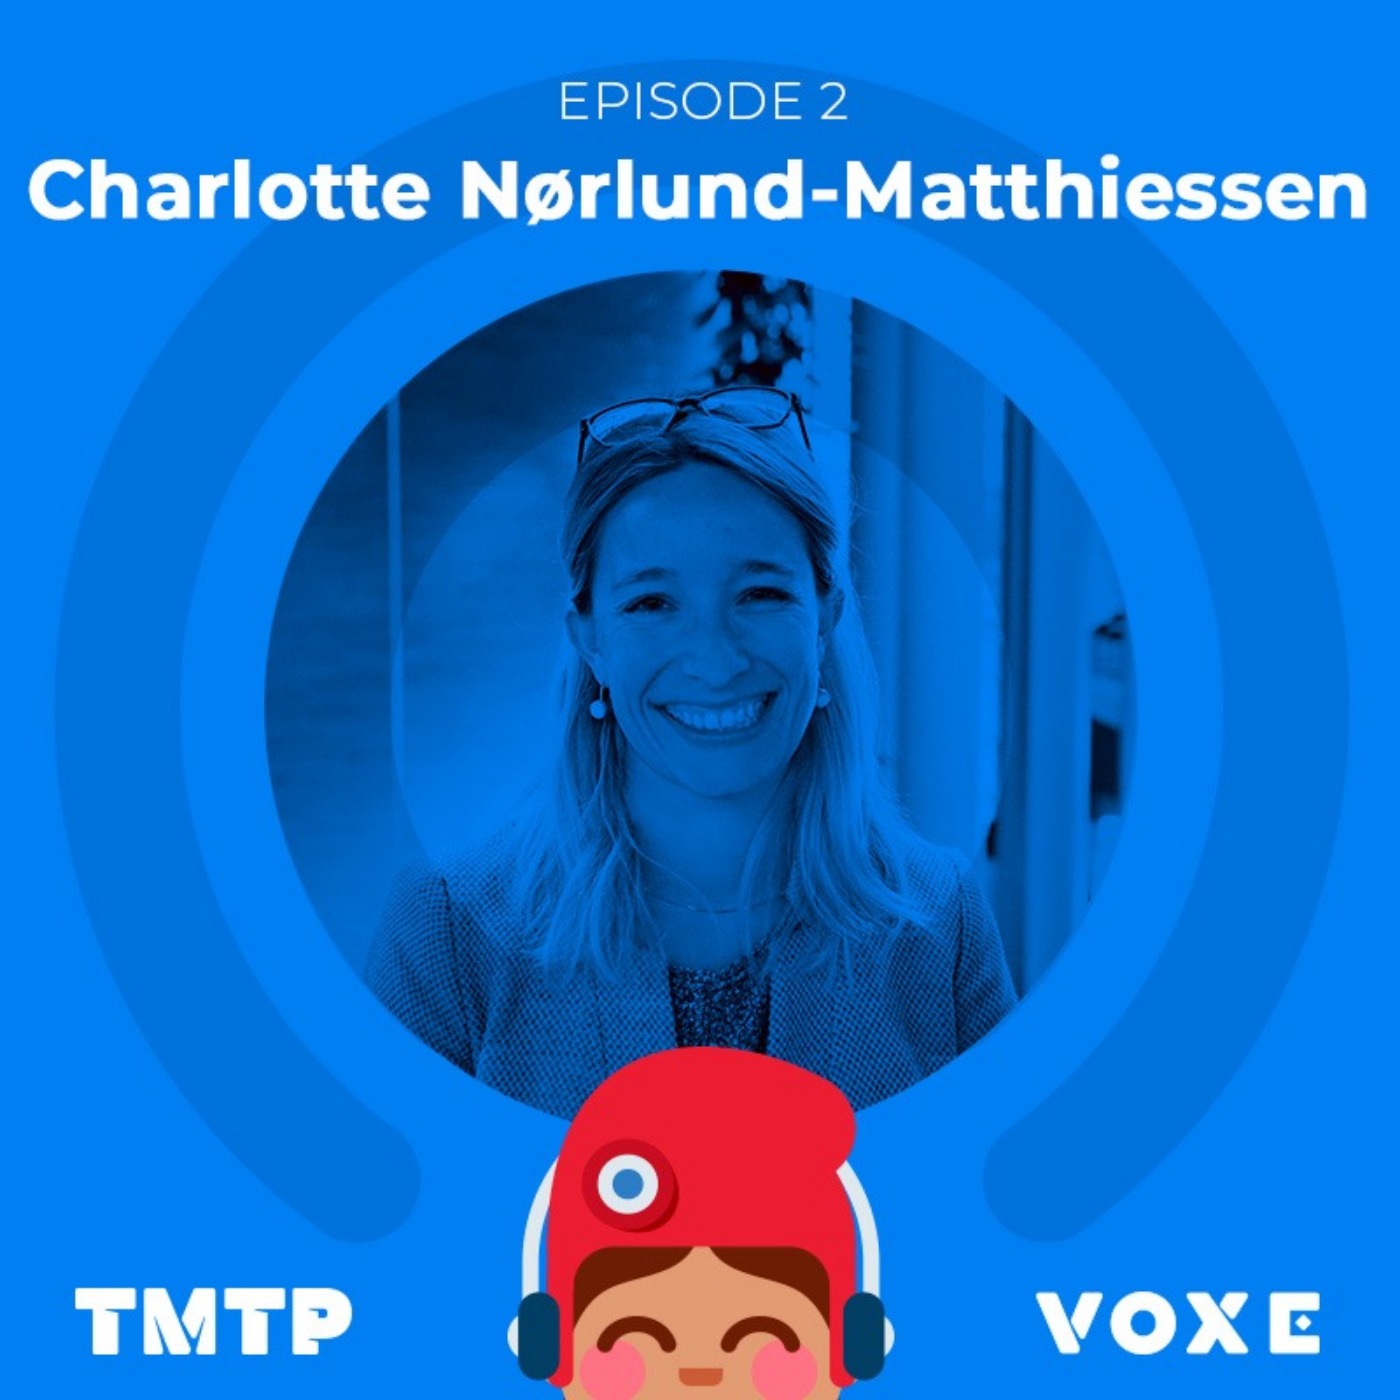 Charlotte Nørlund-Matthiessen : Toi-même tu peux permettre au citoyen de proposer des initiatives pour l’Europe